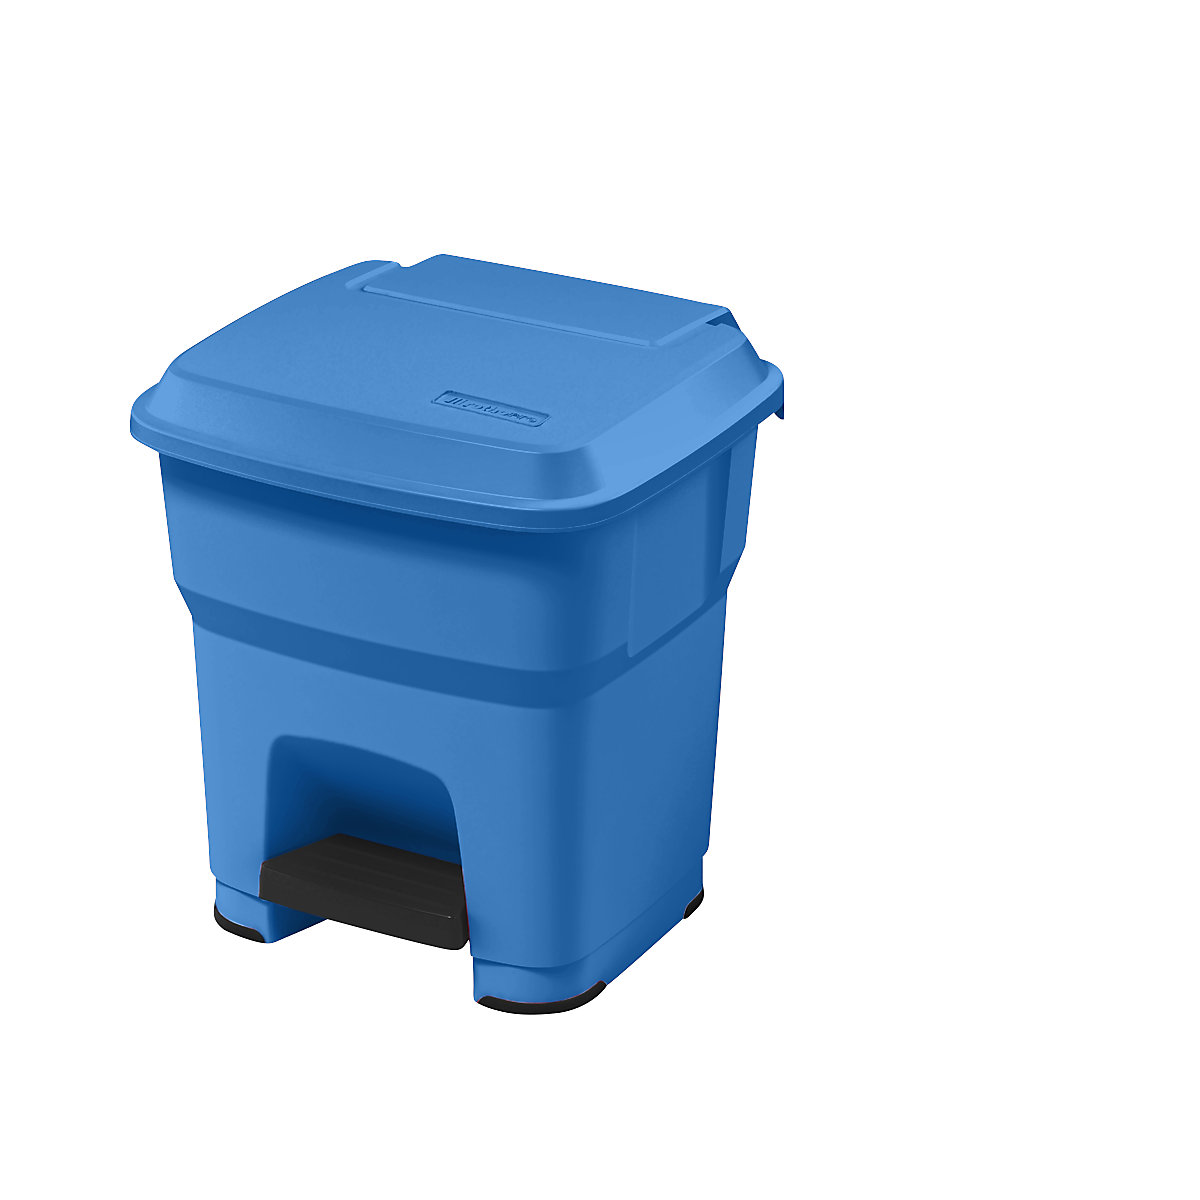 Collecteur de déchets à pédale HERA – rothopro, capacité 35 l, l x h x p 390 x 440 x 390 mm, bleu